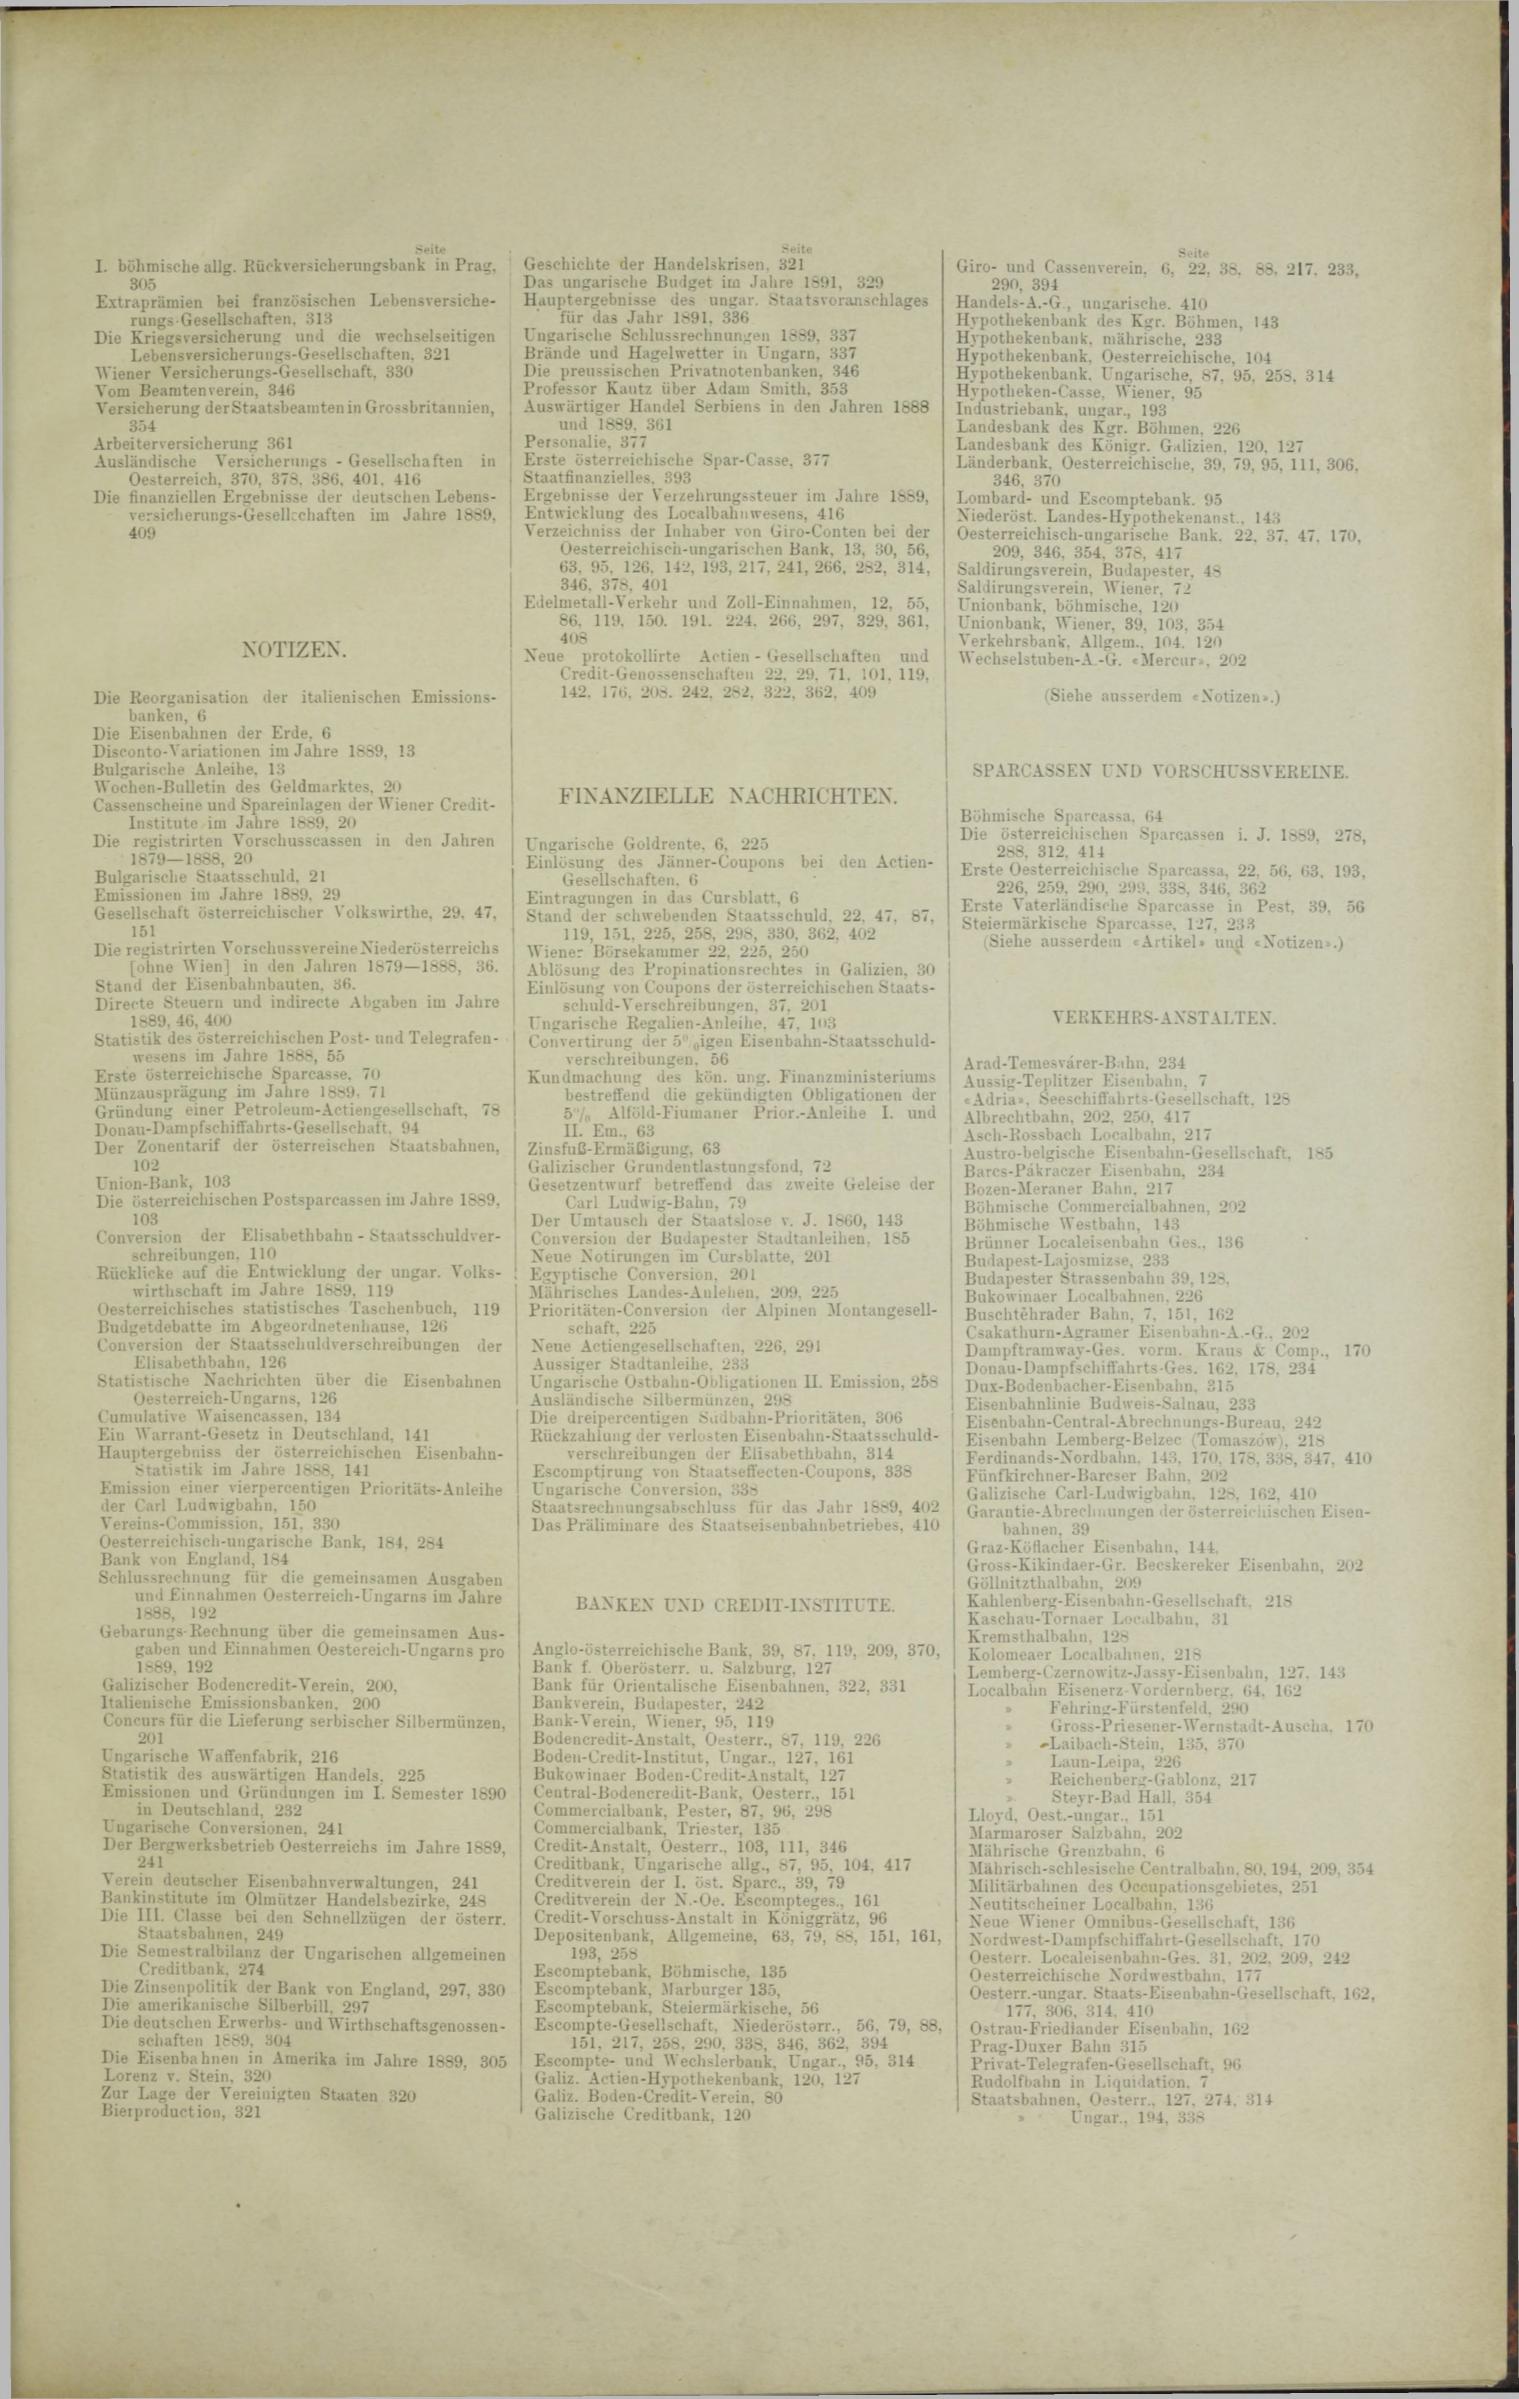 Der Tresor 03.07.1890 - Seite 11